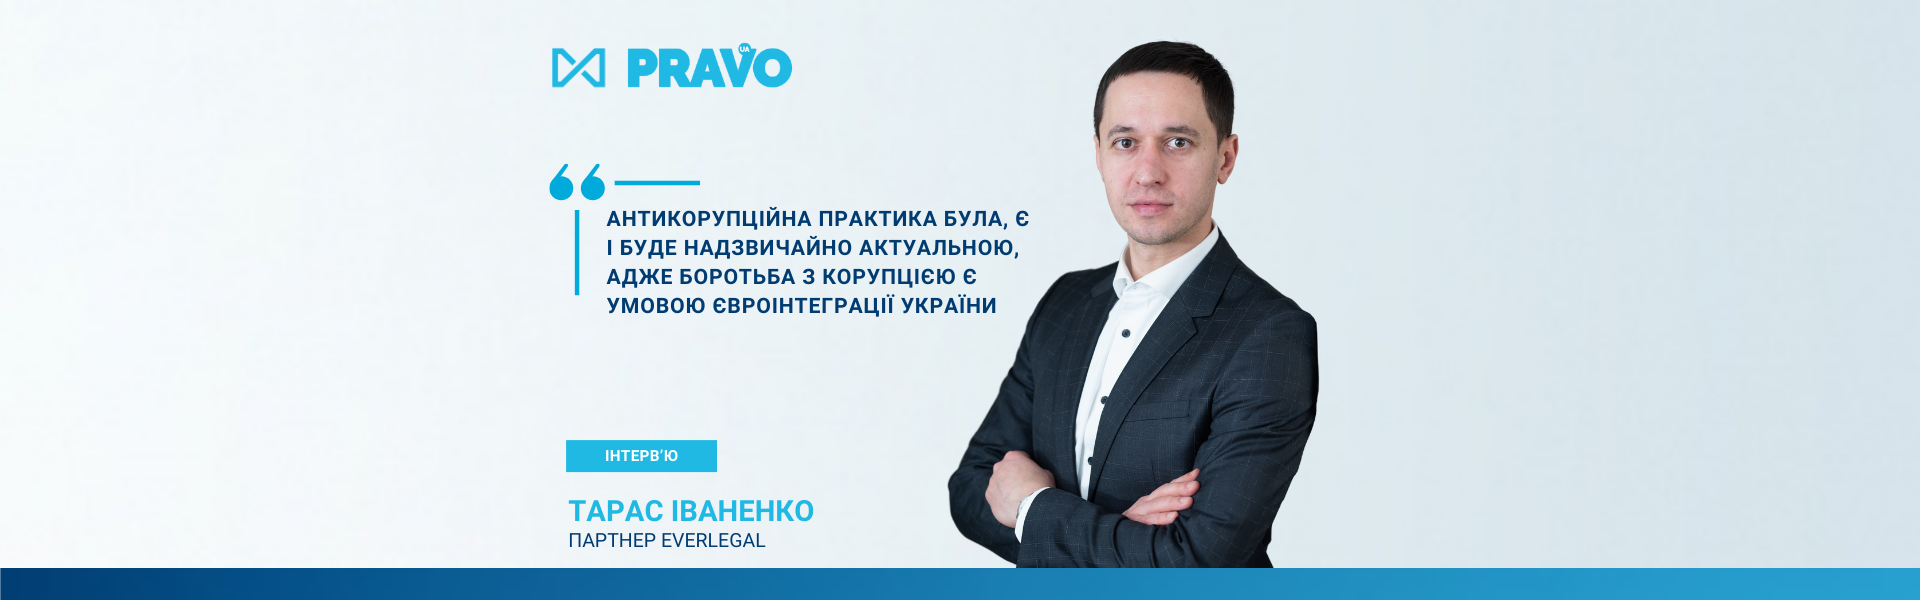 Партнер EVERLEGAL - про важливі аспекти антикорупційного права в Україні в інтерв'ю для видання 